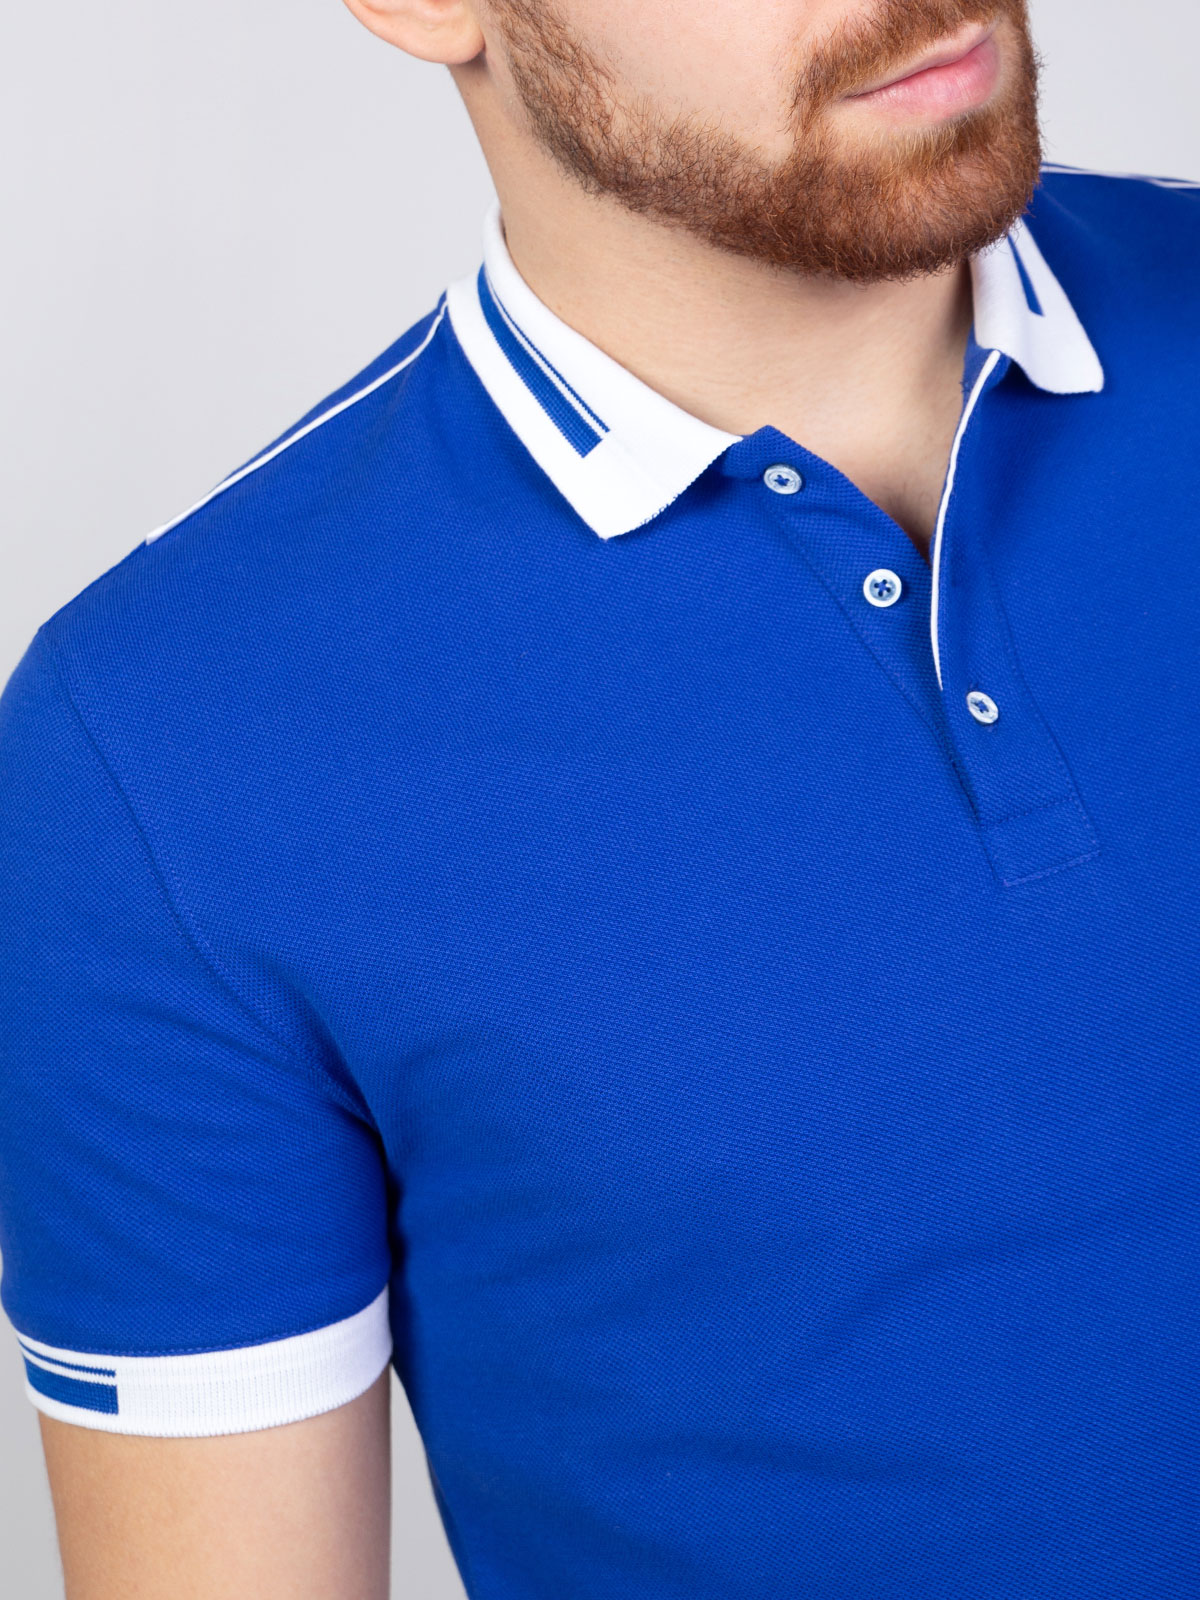 Μπλούζα σε μπλε royal με γιακά σε λευκό - 93398 € 20.25 img3